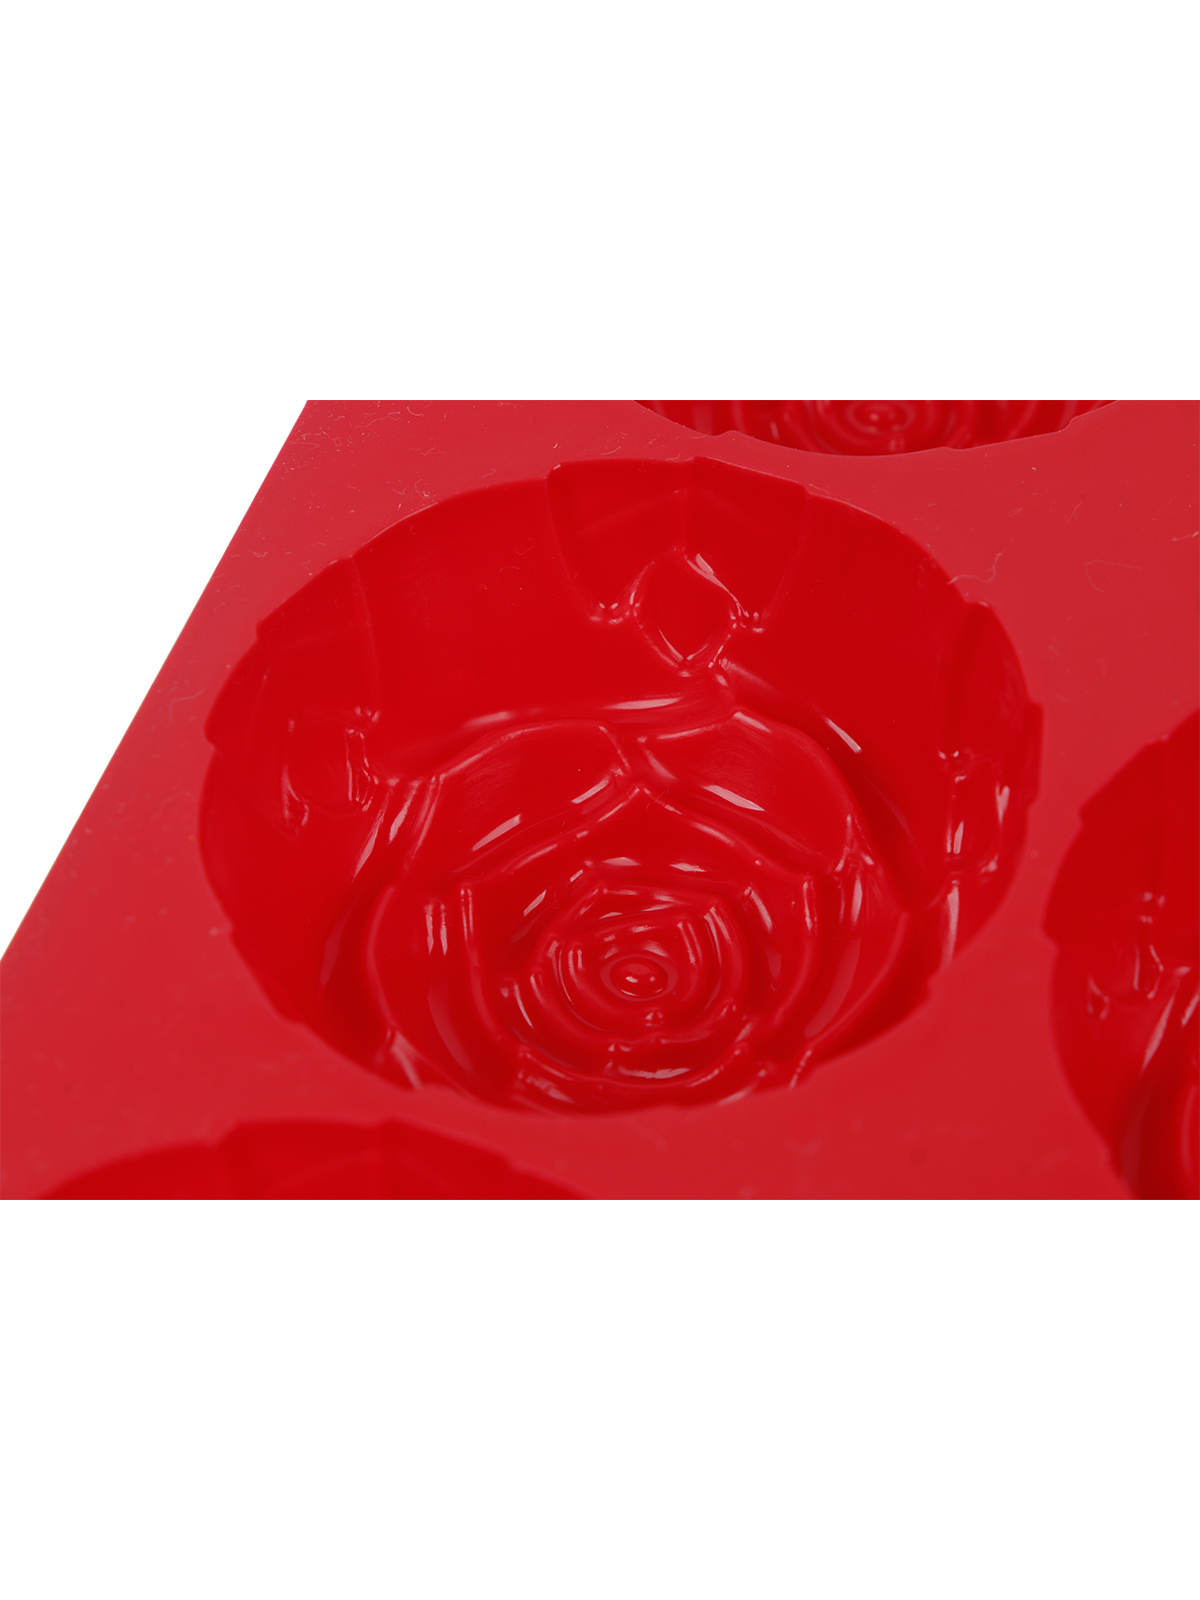 Форма силиконовая "Розы", 6 ячеек, 24,5x16,3х4 см, в асс-те